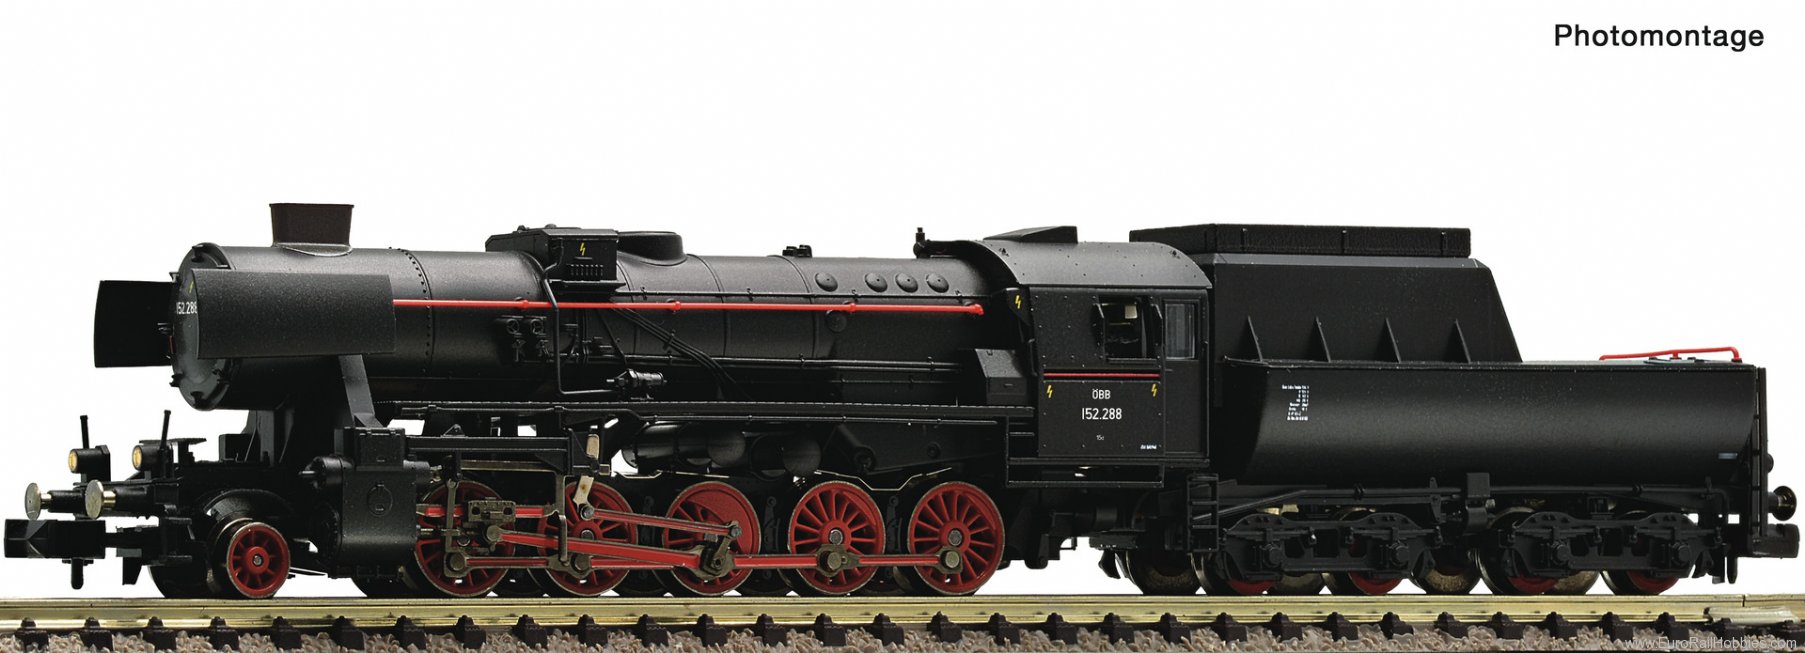 Fleischmann 7170011 Steam locomotive 152 288, ÃBB (DCC Sound)